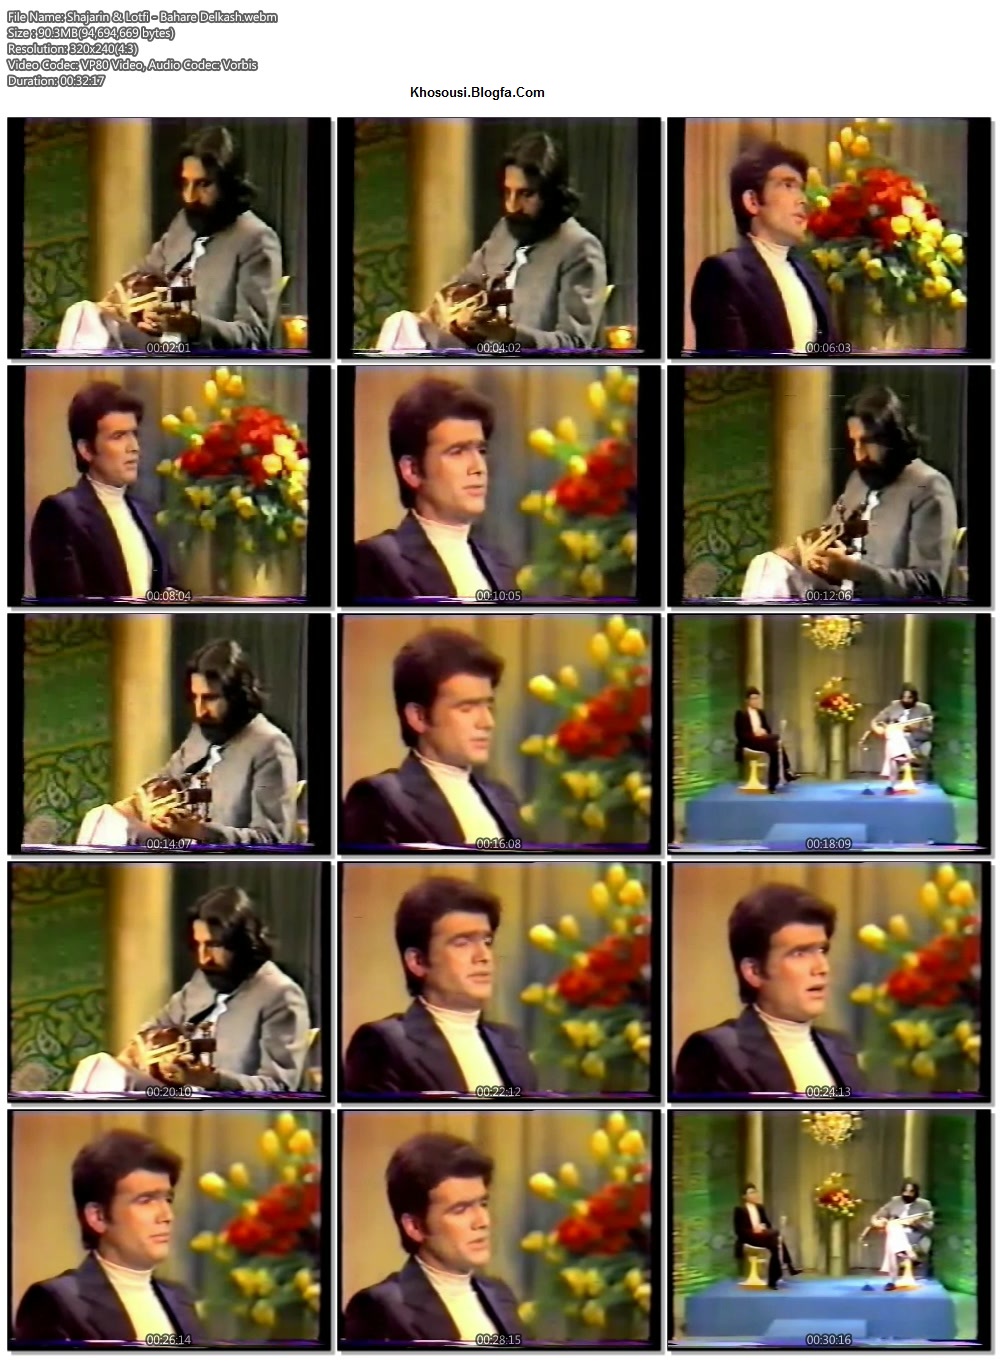 بهار دلکش - اجرای محمدرضا شجریان و محمدرضا لطفی در تلوزیون